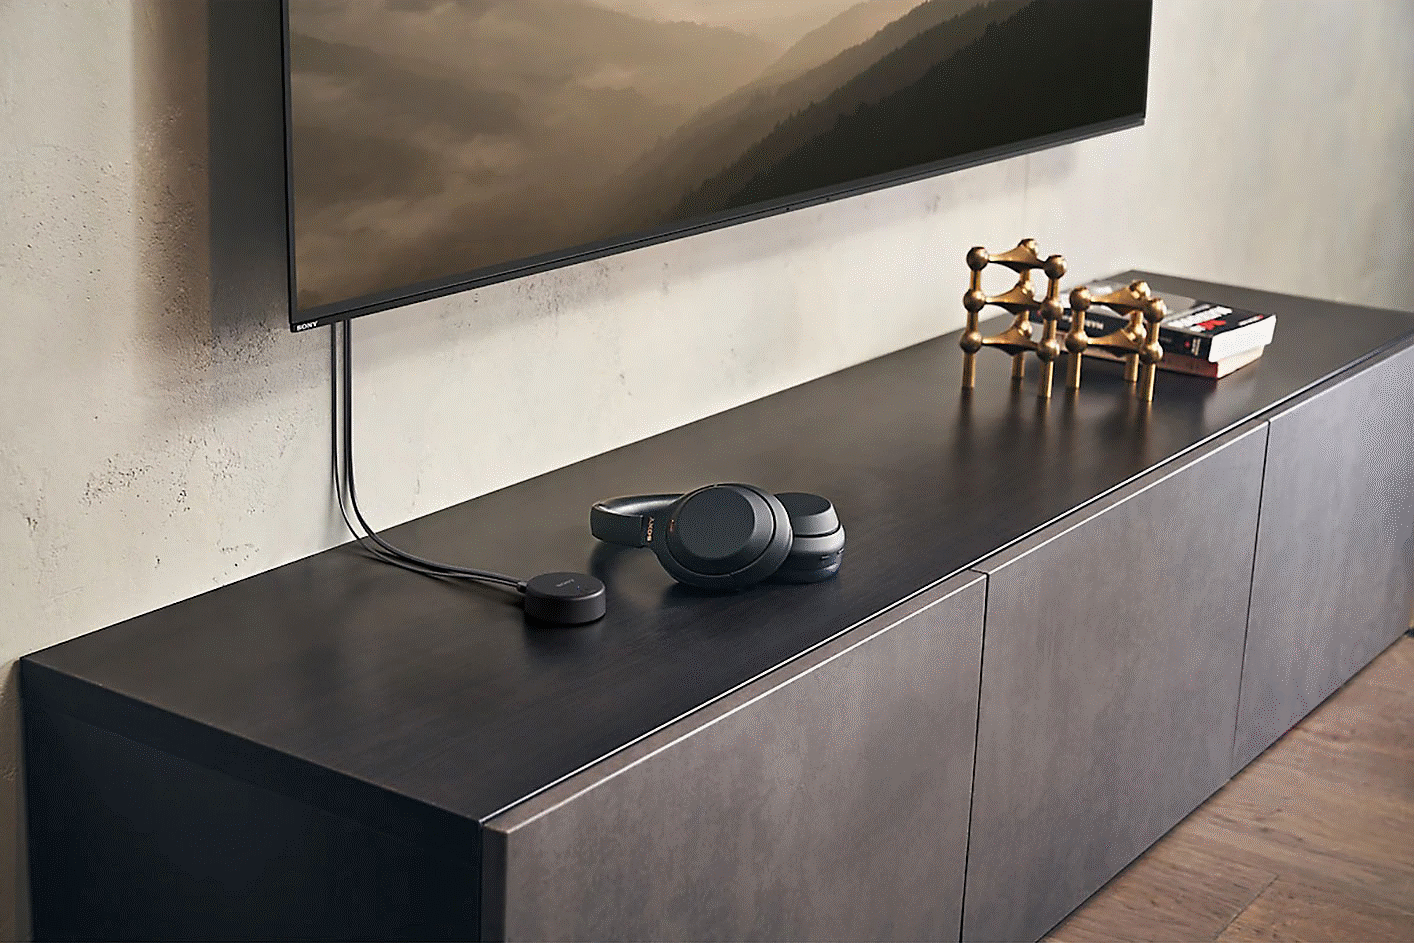 ภาพหูฟัง Sony WH-CH720 สีดำที่วางอยู่บนยูนิตทีวีข้างใต้ทีวีที่ติดผนัง